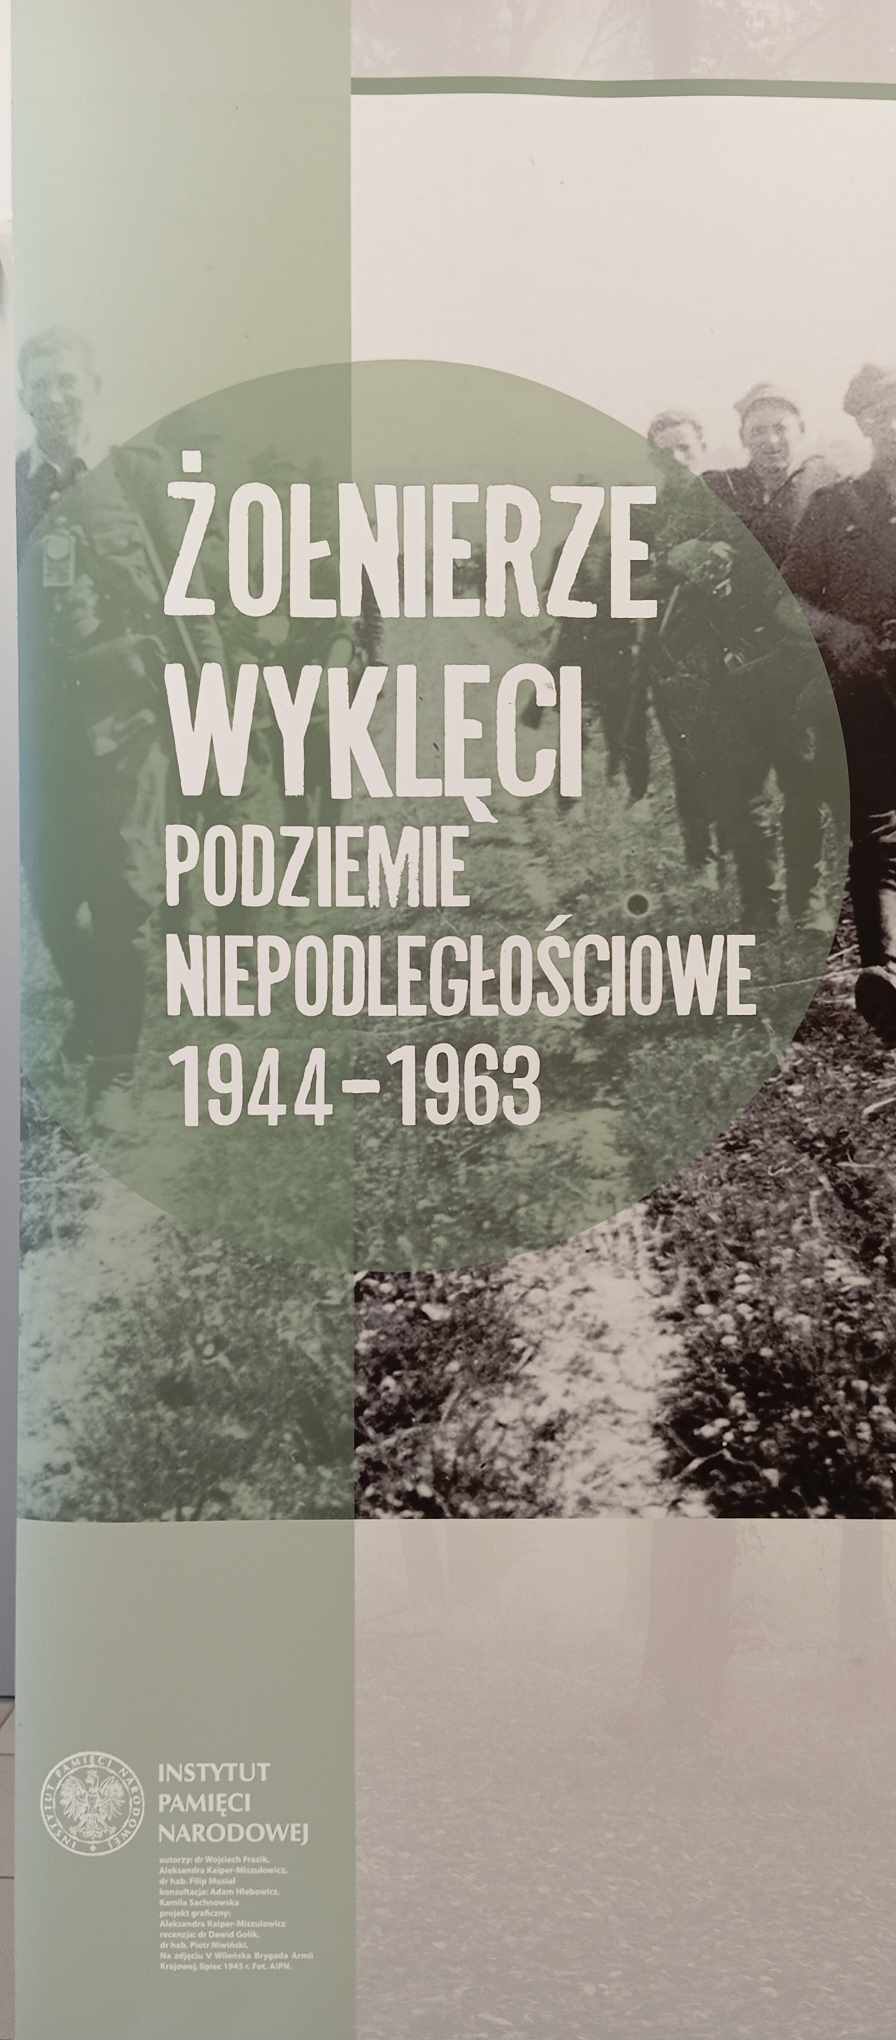 Żołnierze Wyklęci - Podziemie Niepodległościowe 1944-1963 - wystawa